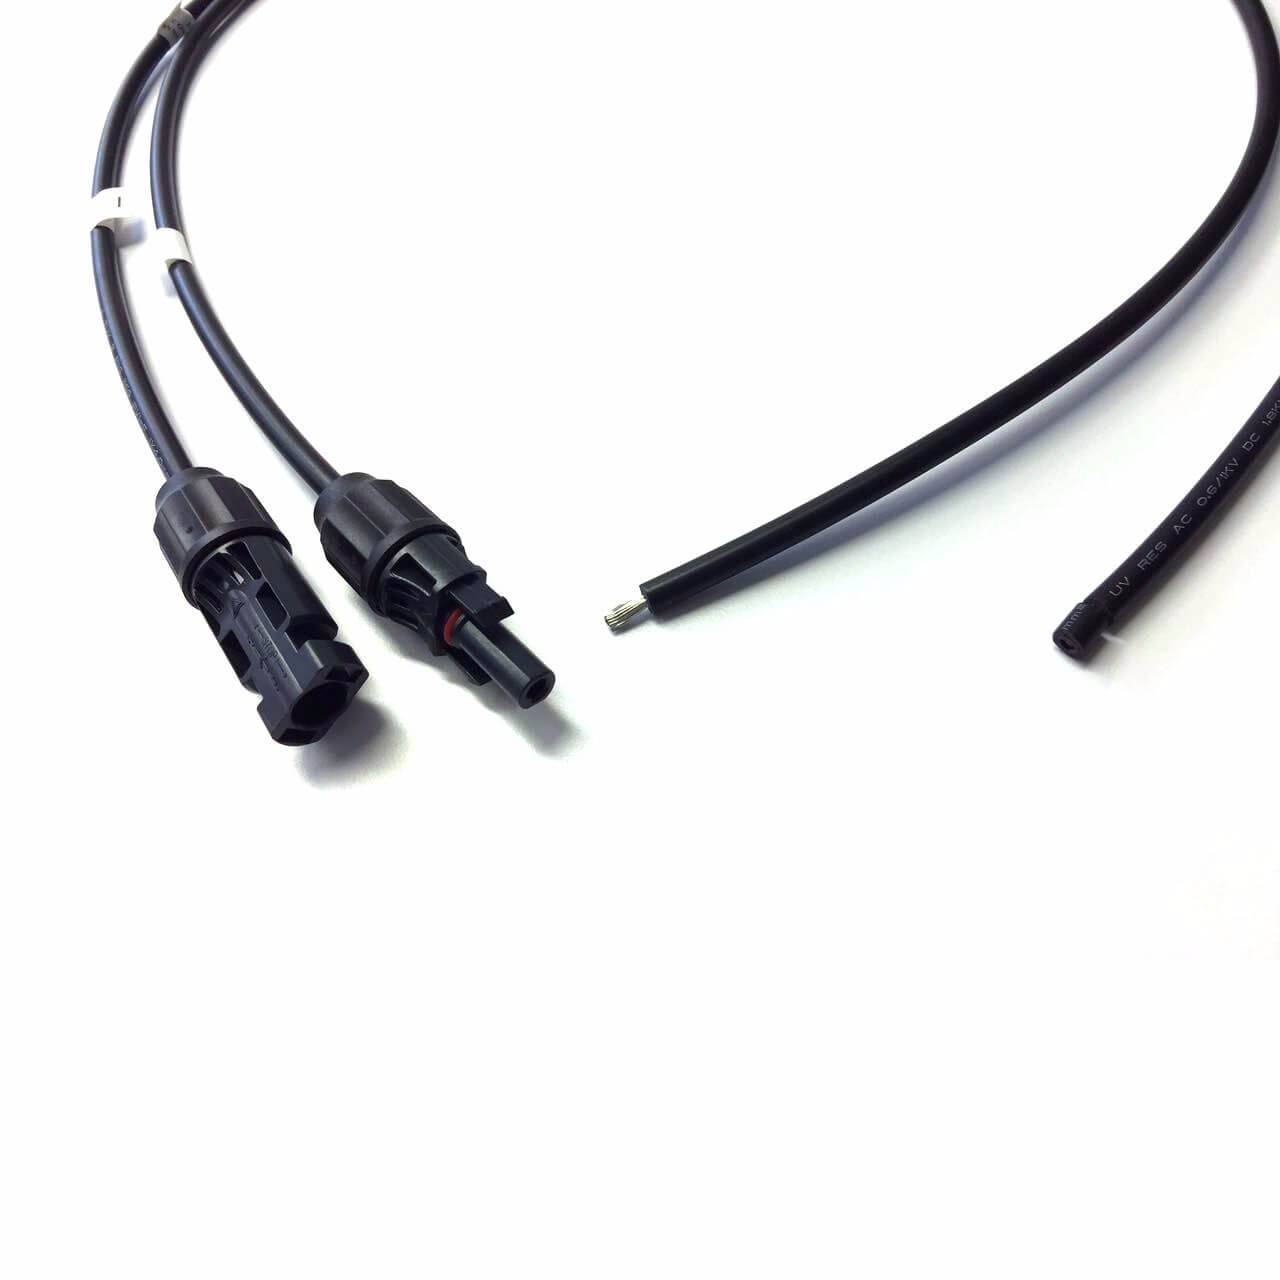 Anschlusskabel Set +/- 4mm² schwarz 2 x 5 m mit MC4 Stecker vormontiert